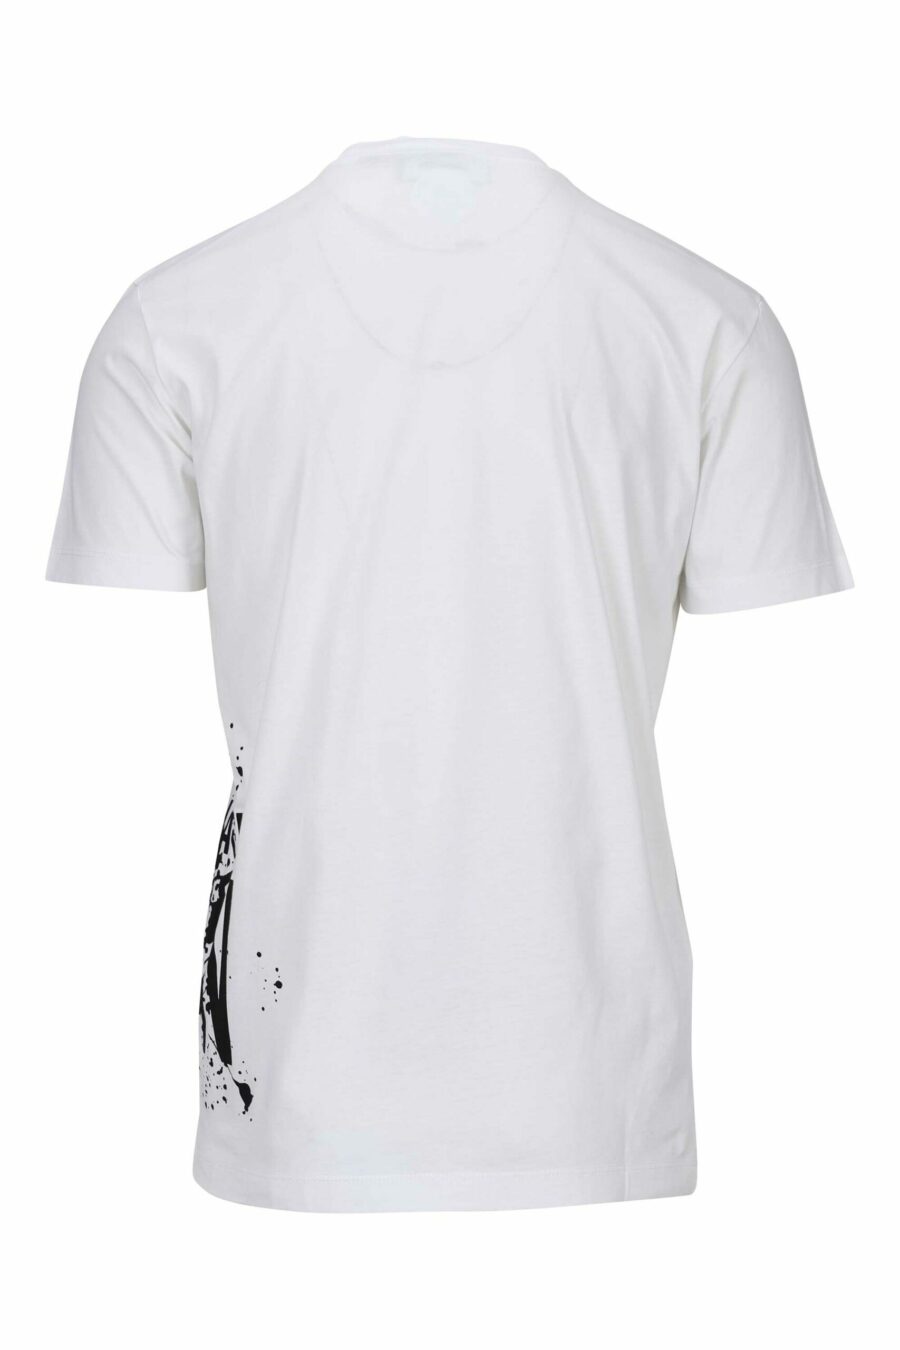 Weißes T-Shirt mit "icon splash" Maxilogo darunter - 8054148358549 1 skaliert